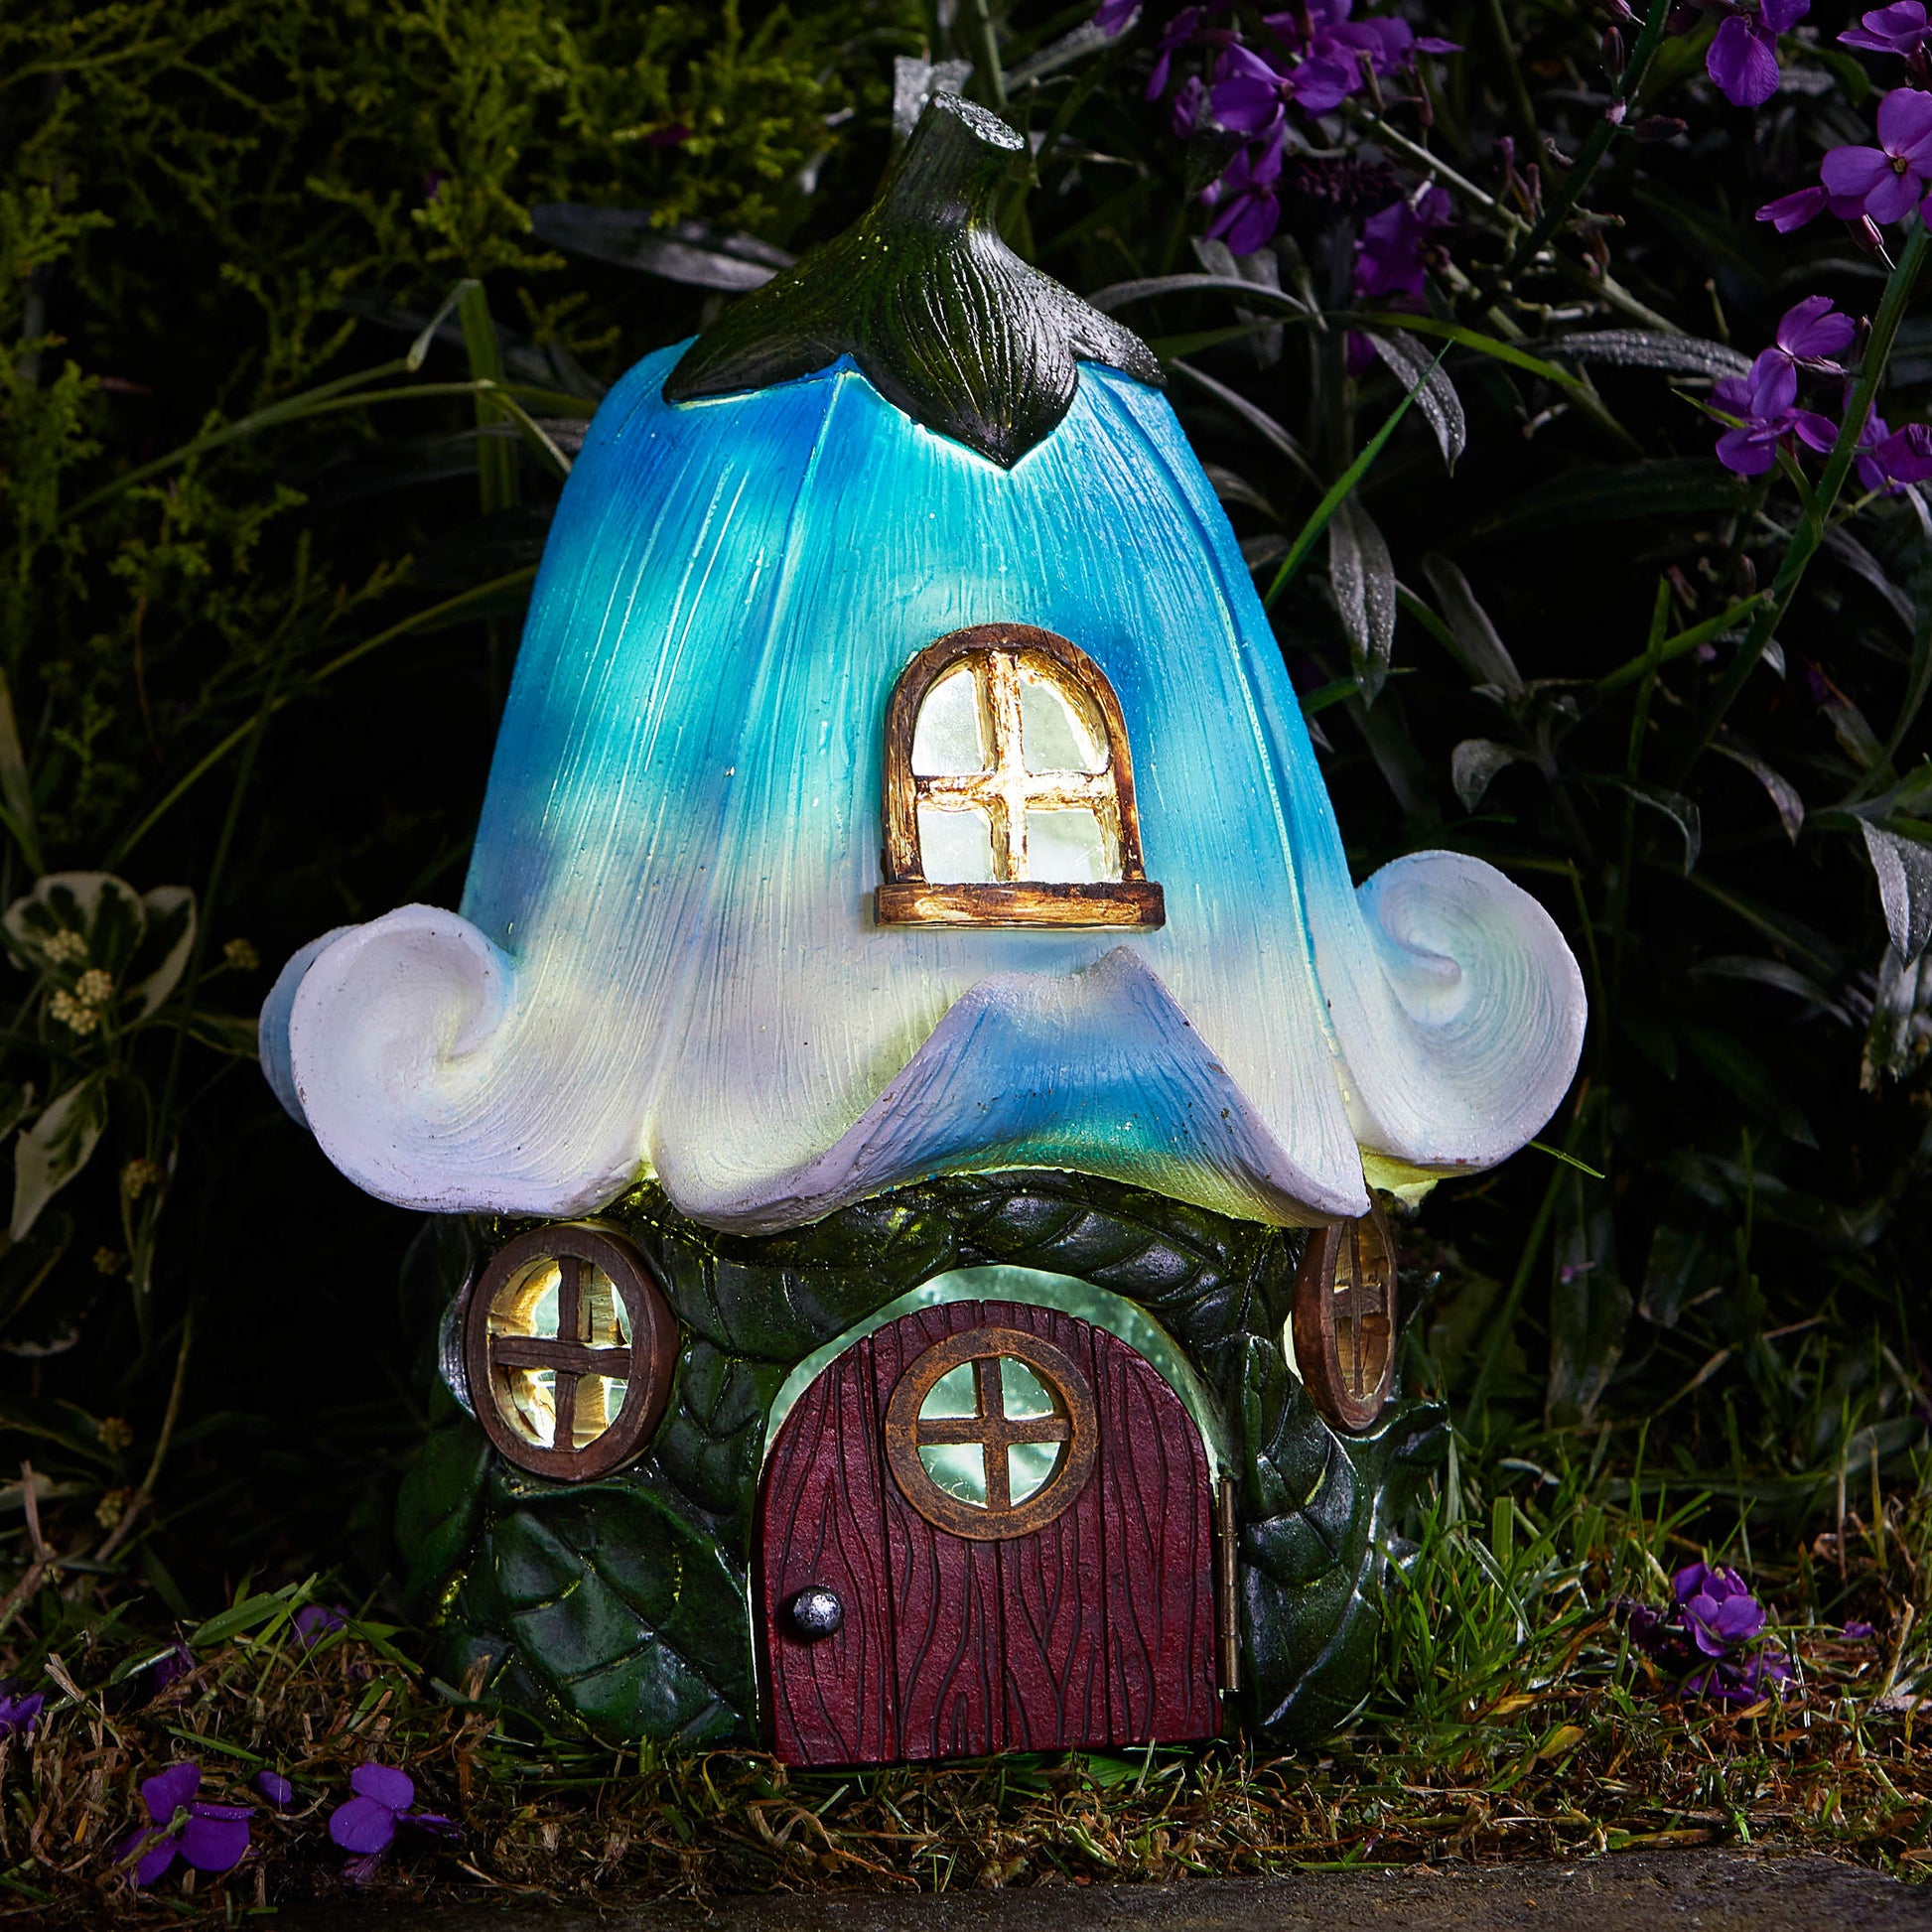 Bluebell Cottage - svietiaca chalúpka pre vílu alebo elfa v záhrade z kolekcie The Elvedon